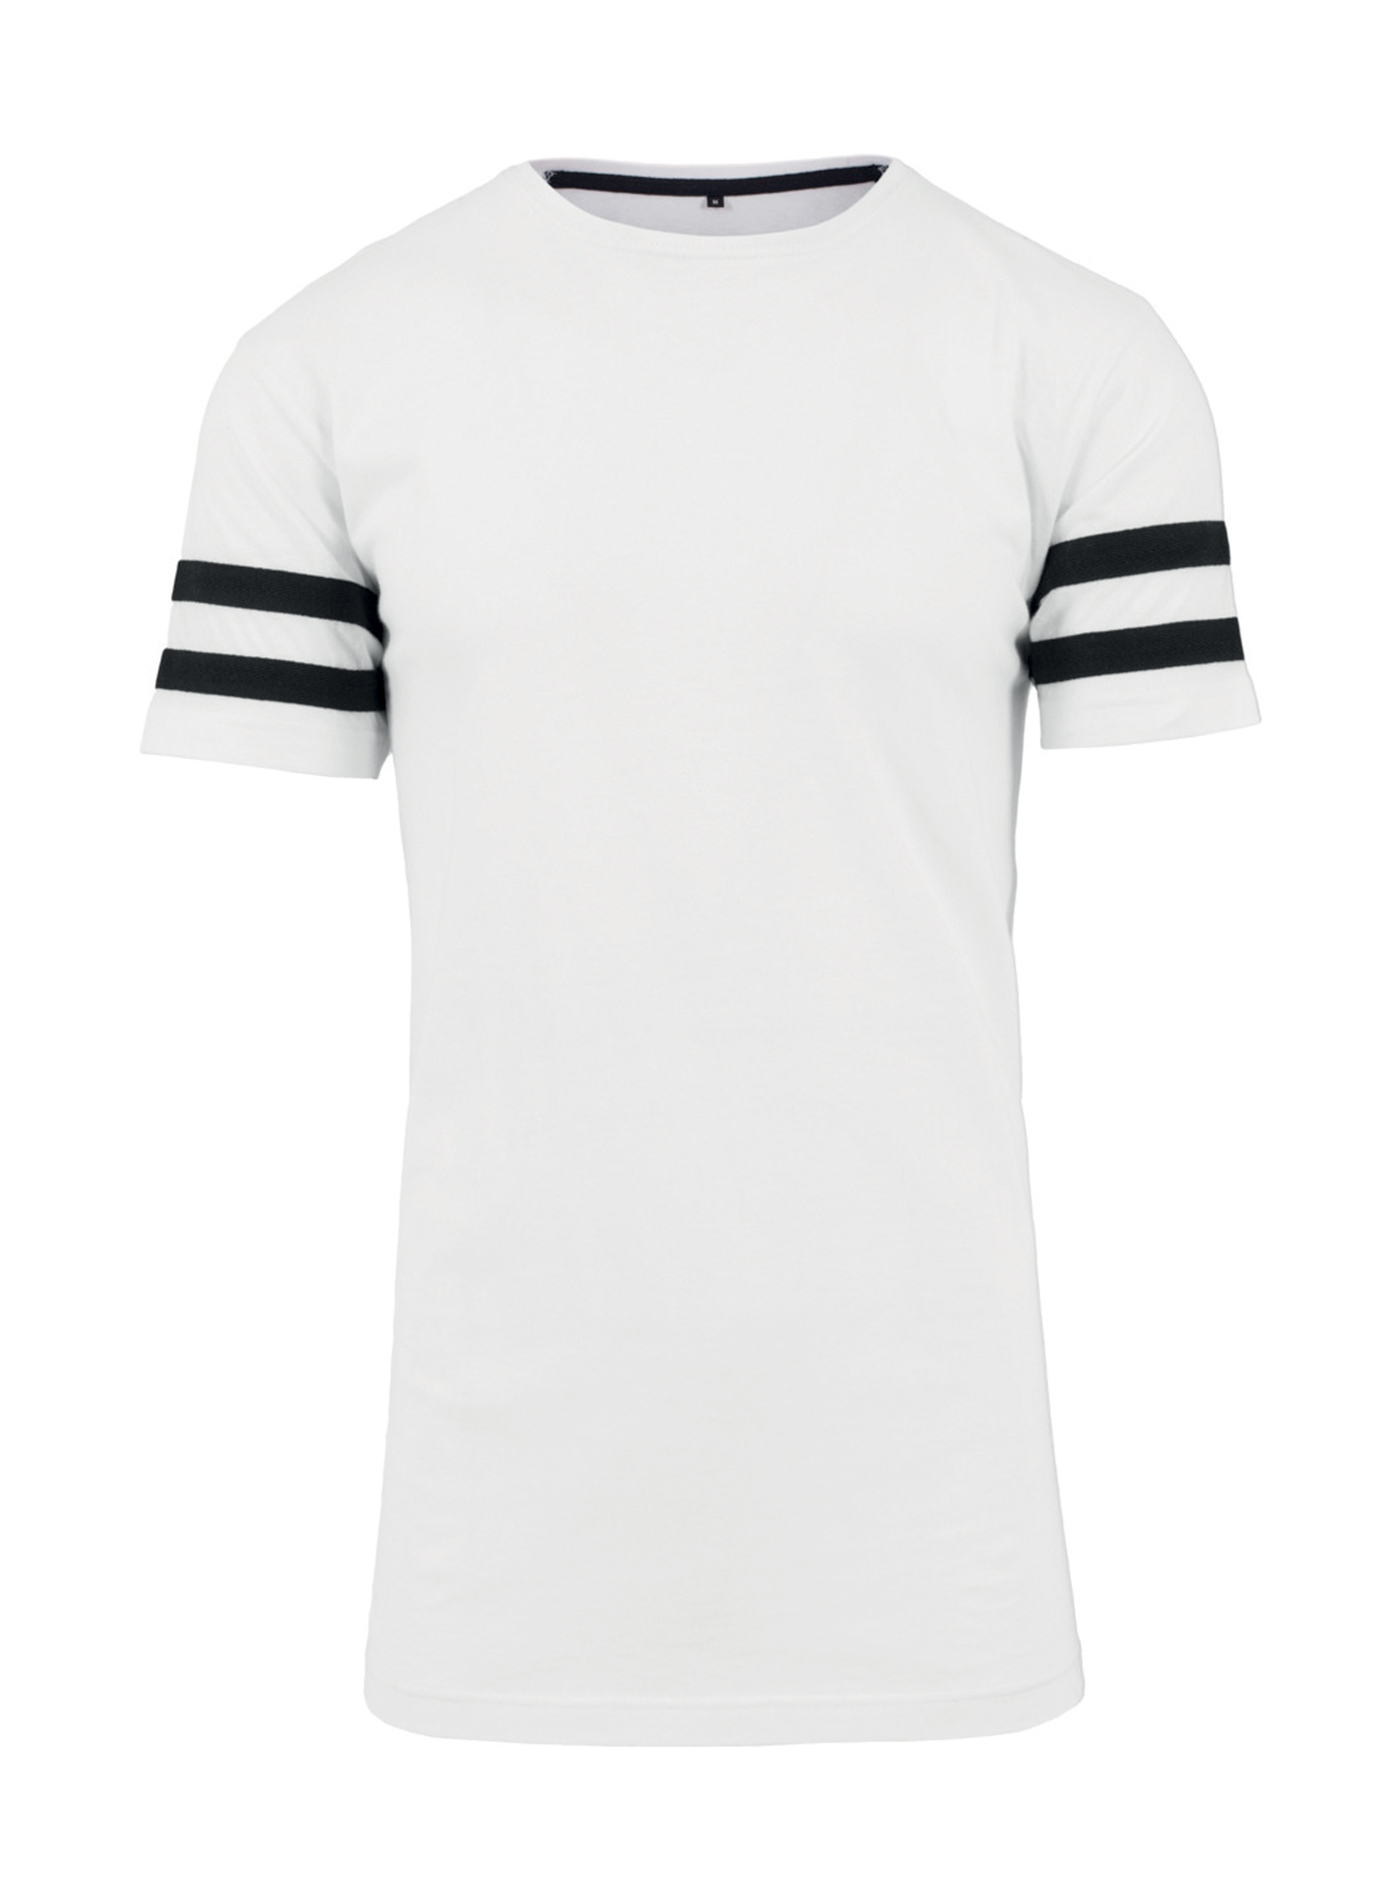 Pánské tričko Built your Brand Stripe Jersey - bílá/černá XXL